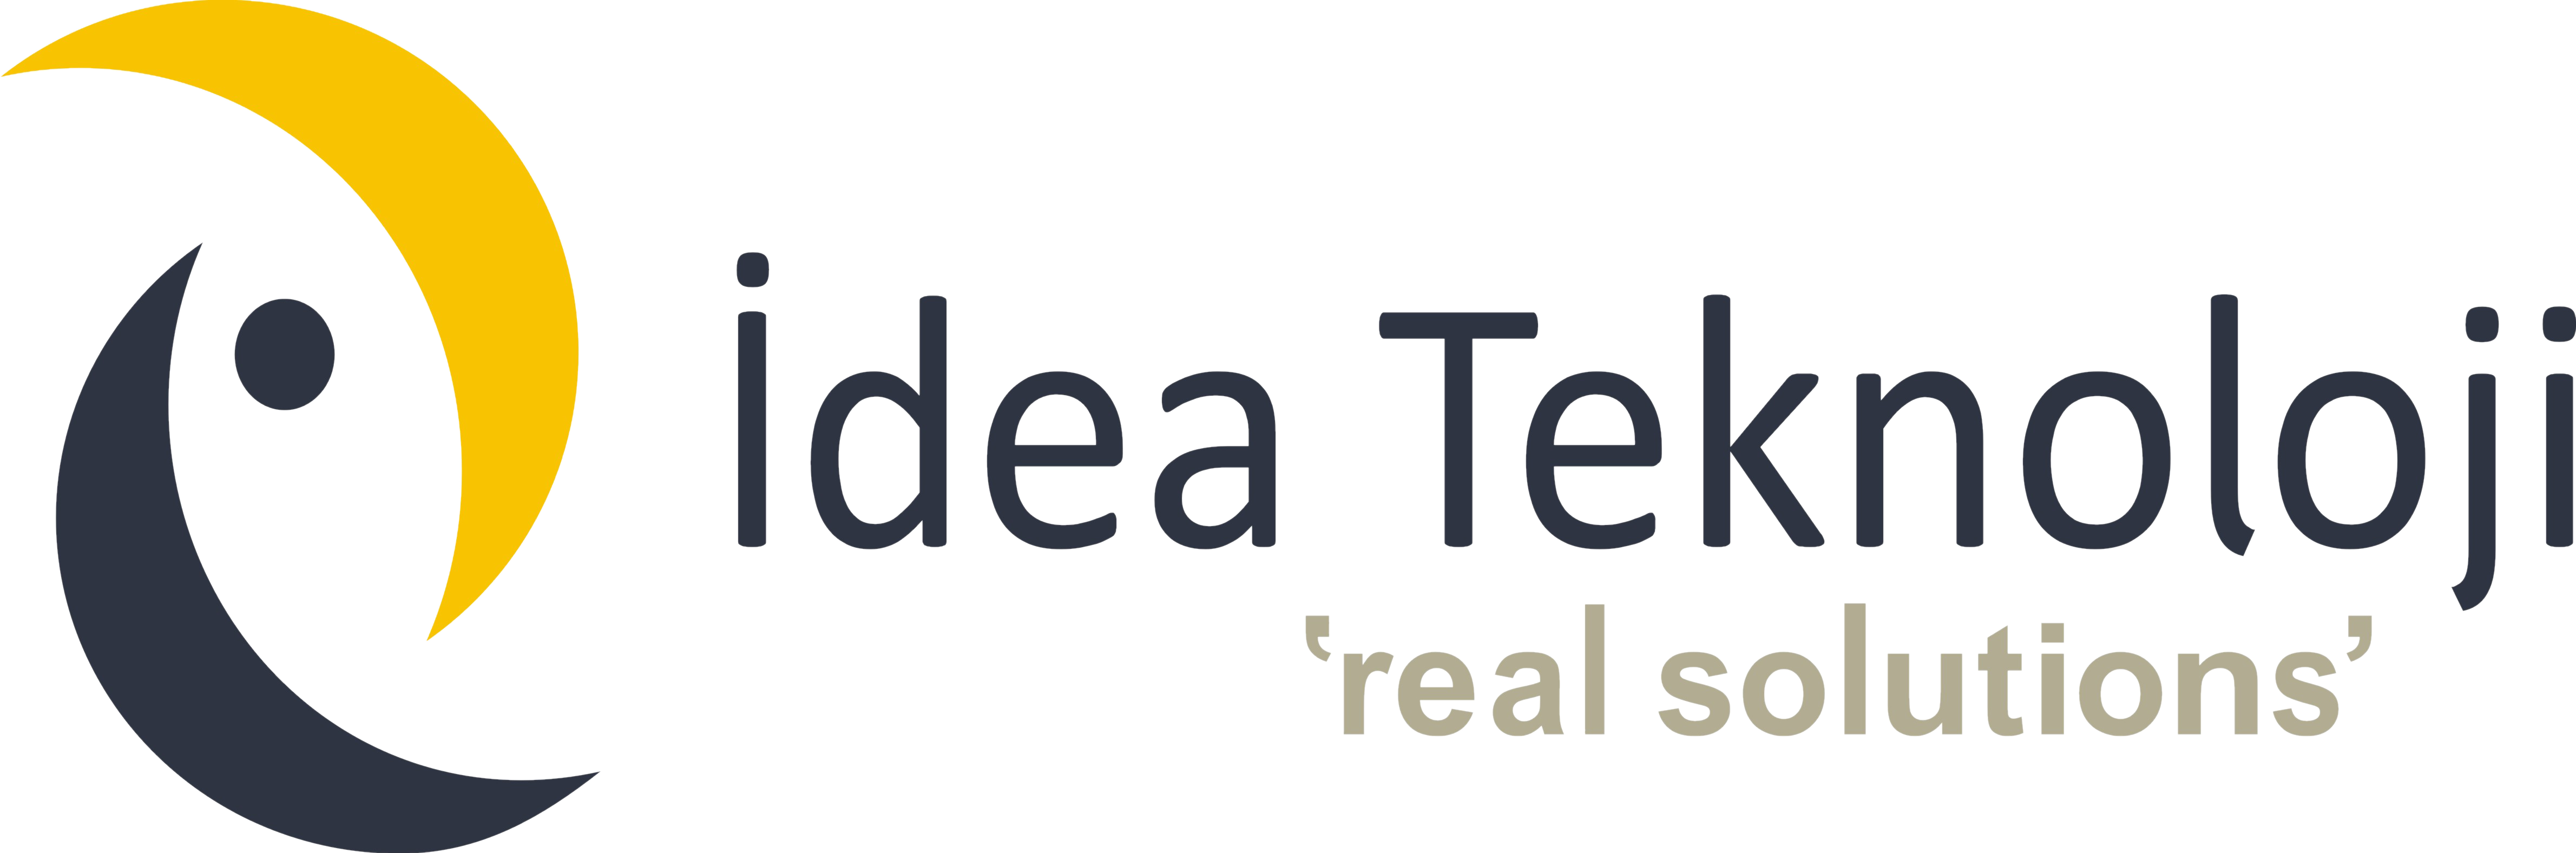 www.ideateknoloji.com